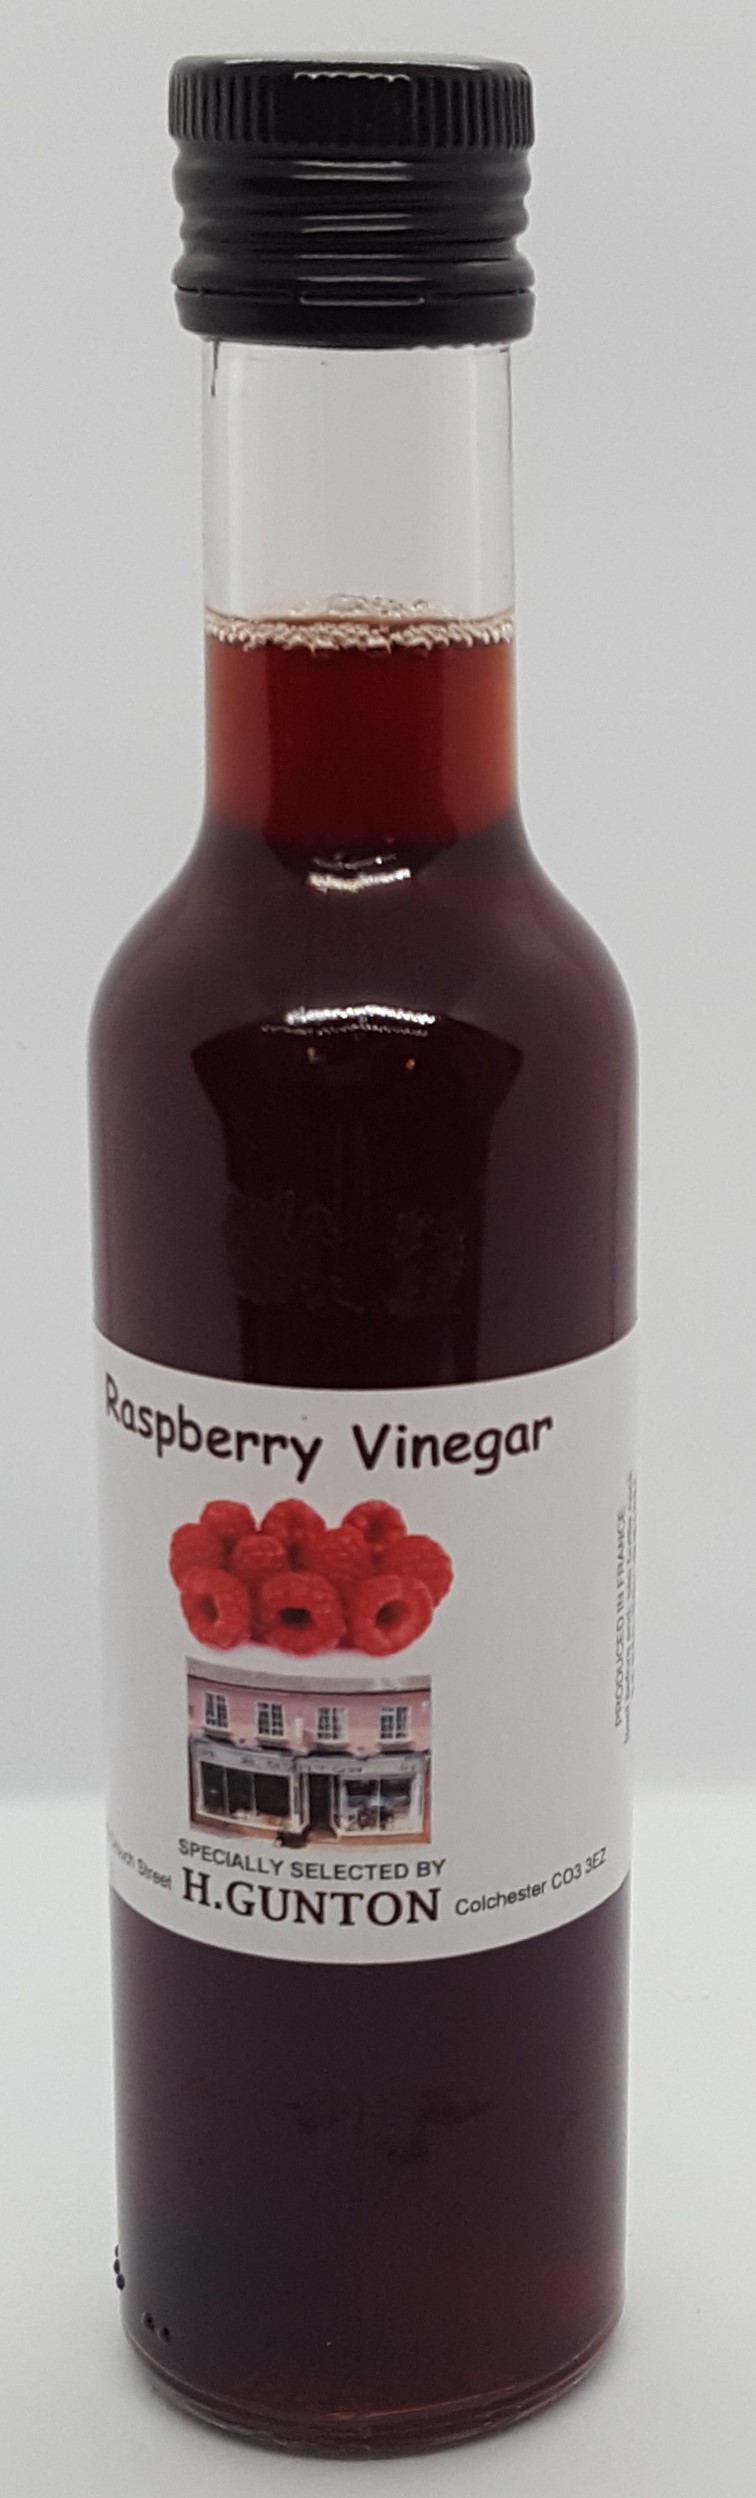 Guntons Raspberry Vinegar